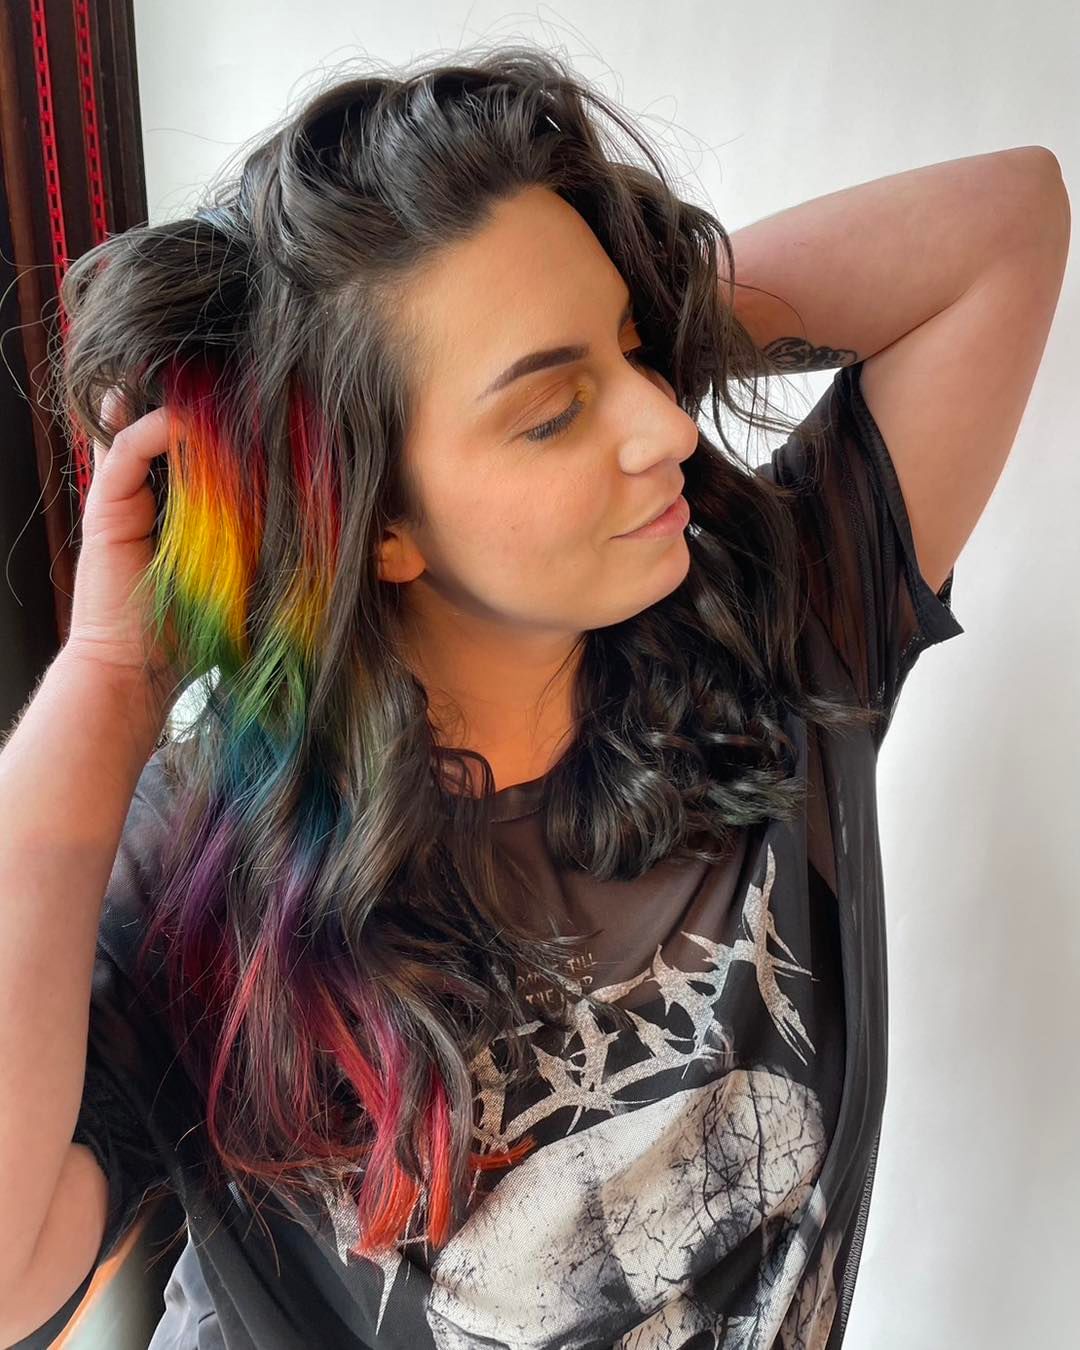 Rainbow Peekaboo Hair